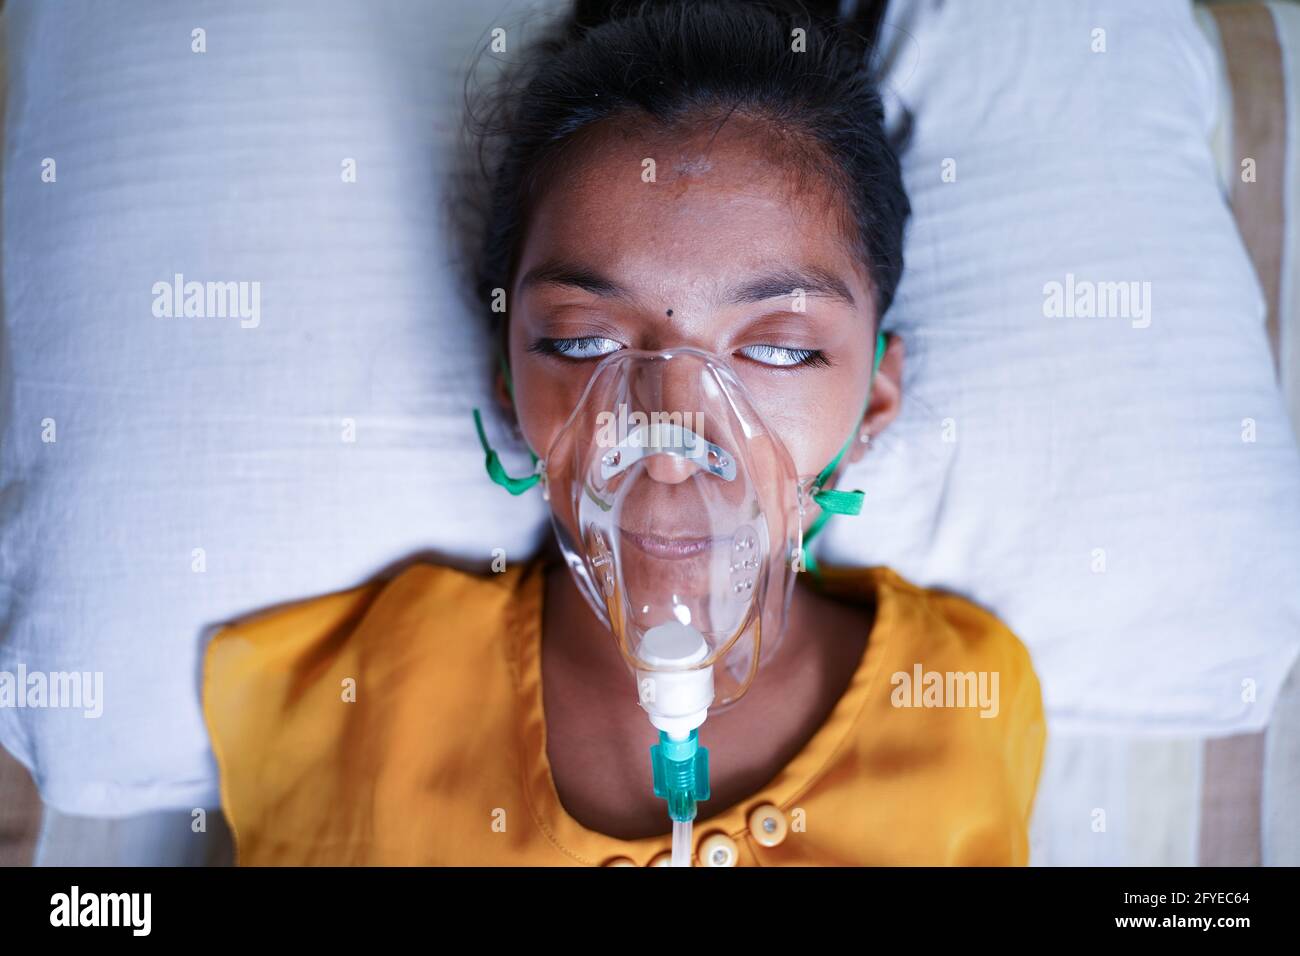 Gros plan de la respiration d'un jeune enfant sur un masque à oxygène sous ventilation assistée en raison de l'essoufflement ou de la dyspnée du coronavirus Covid-19 - concept d'enfants Banque D'Images